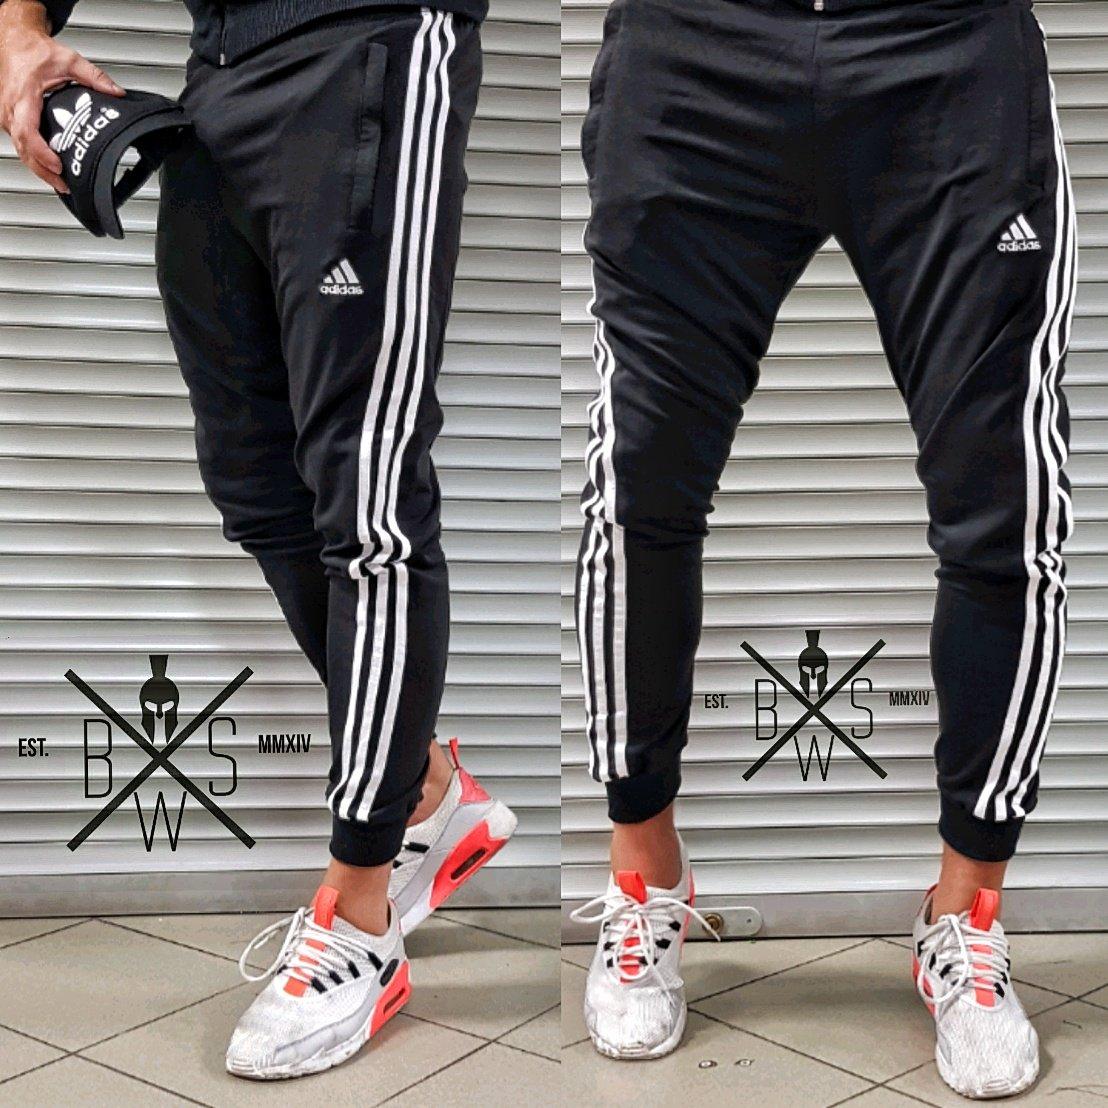 

Спортивные штаны мужские Adidas (Адидас) трикотажные черные осенние | весенние | летние ЛЮКС качества, Черный